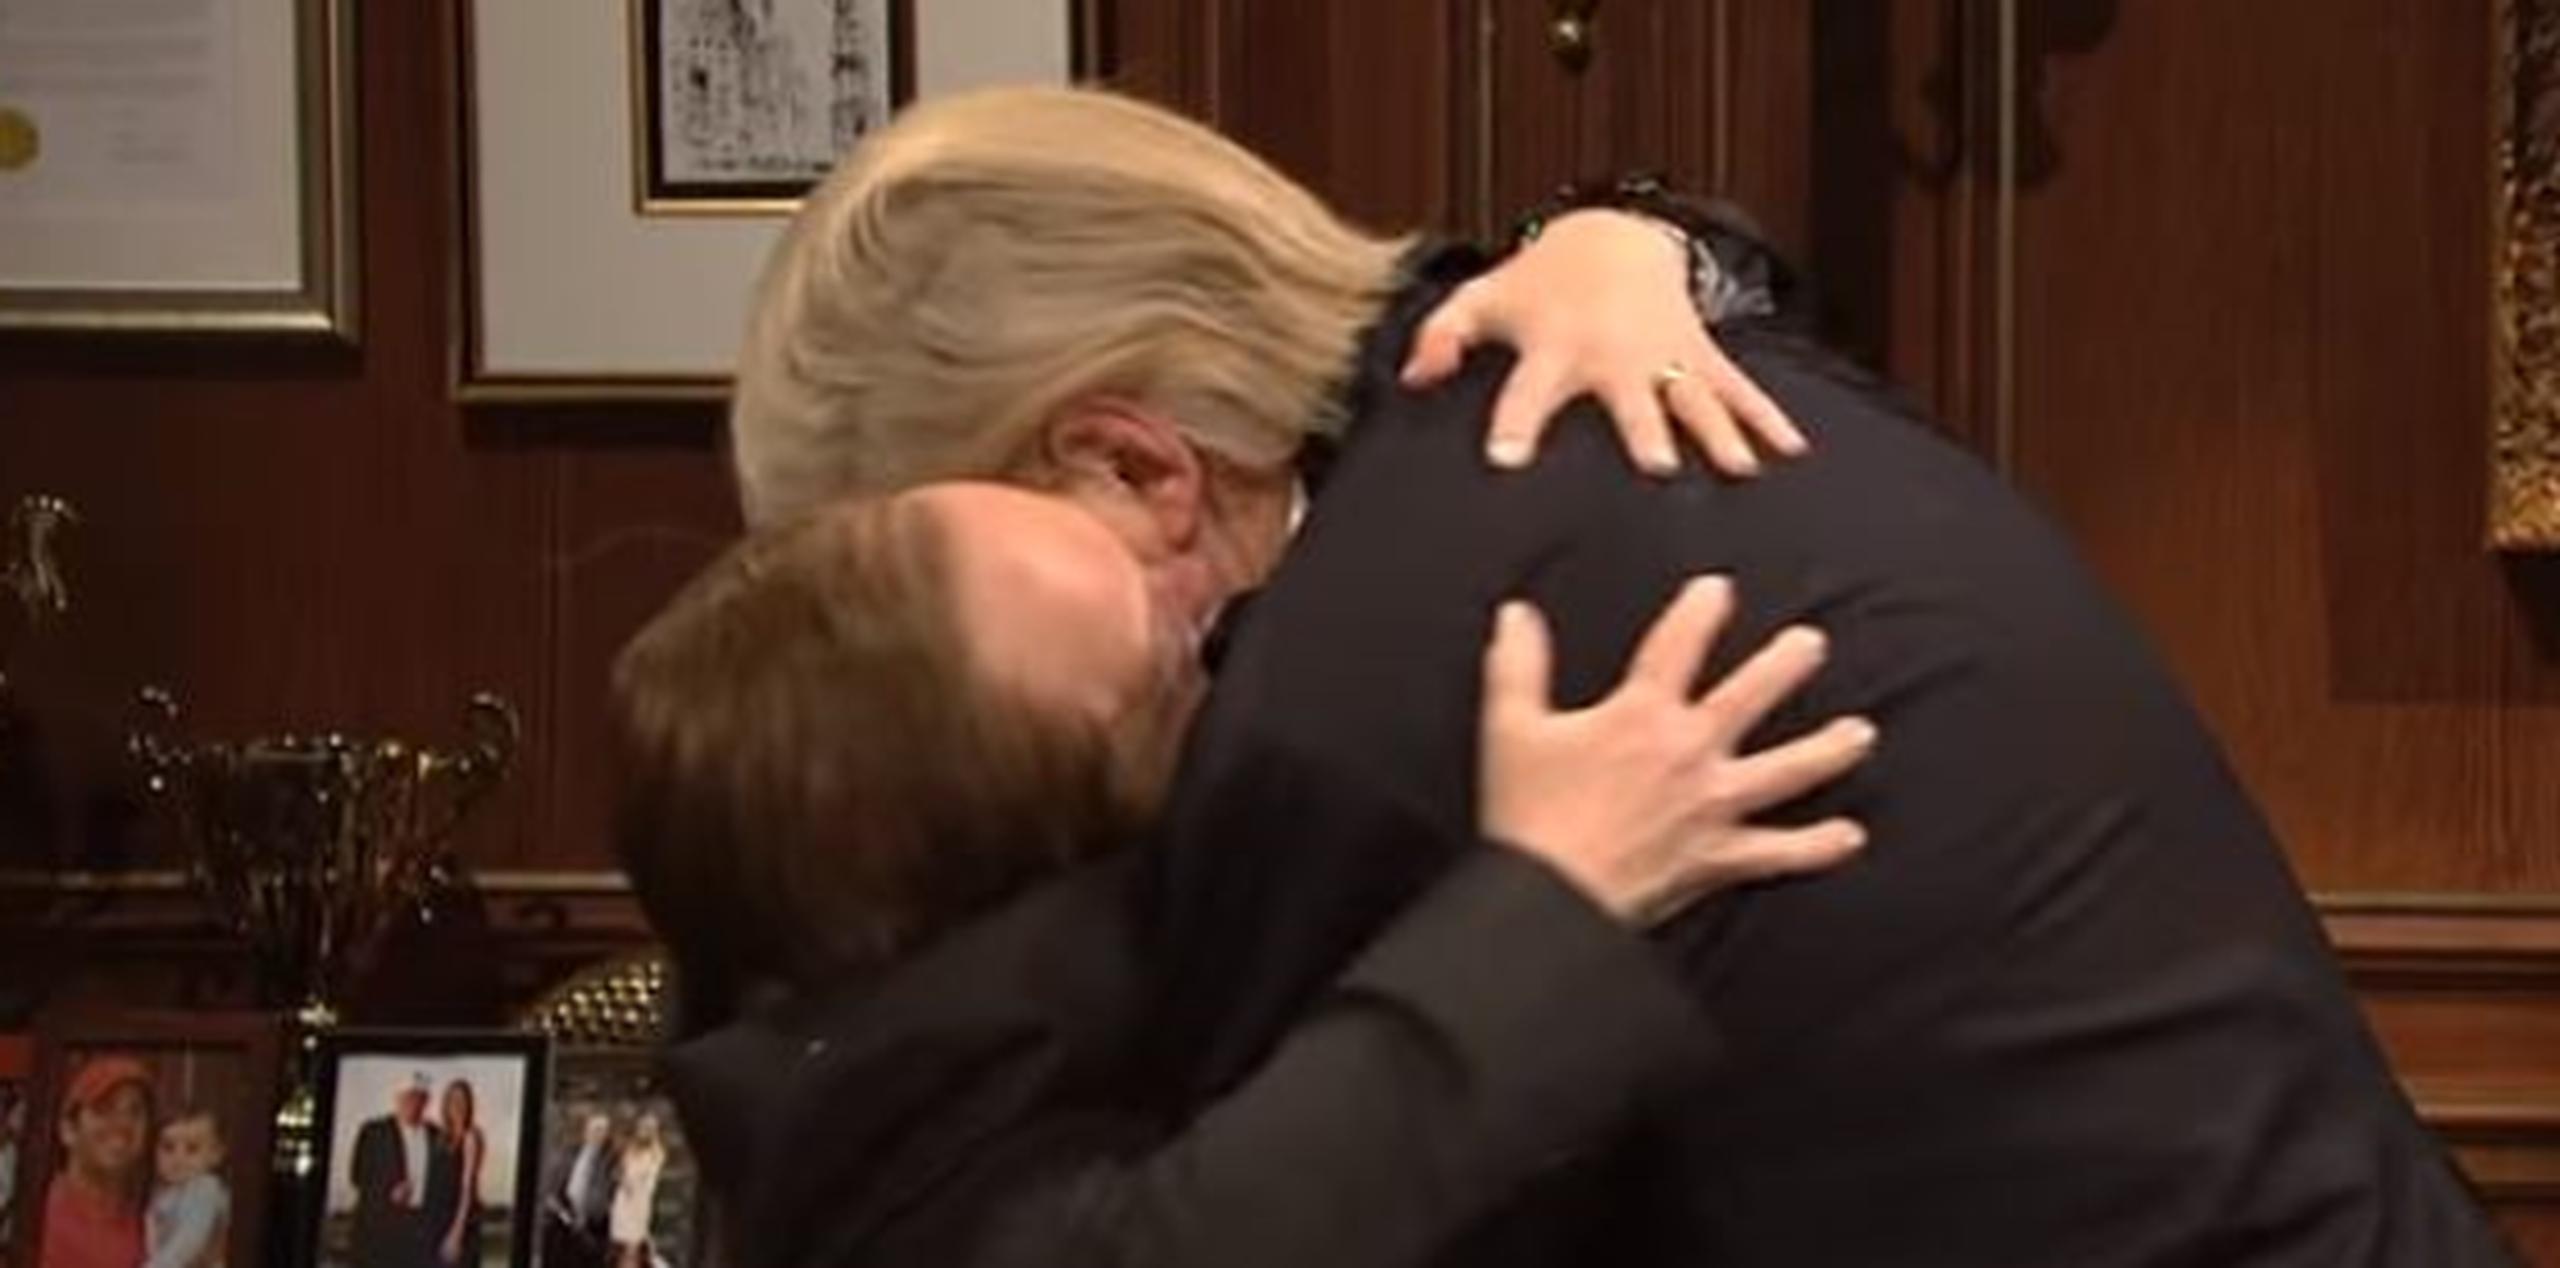 El momento del beso entre Spicer (Melissa McCarthy) y Trump (Alec Baldwin). (YouTuibe)